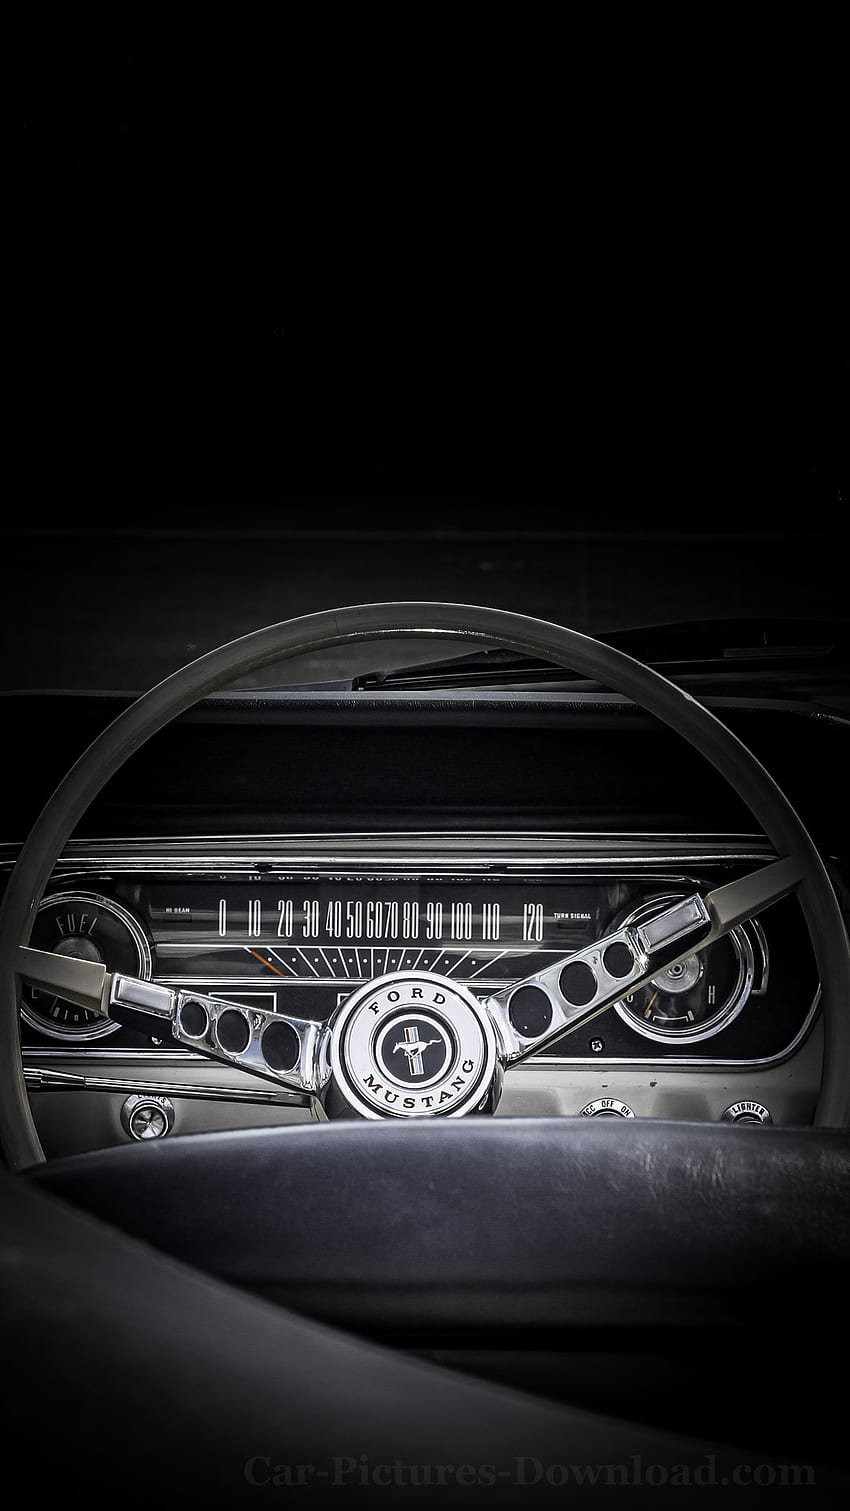 Ford - & - Dan Seluler, Telepon Berlogo Mustang wallpaper ponsel HD